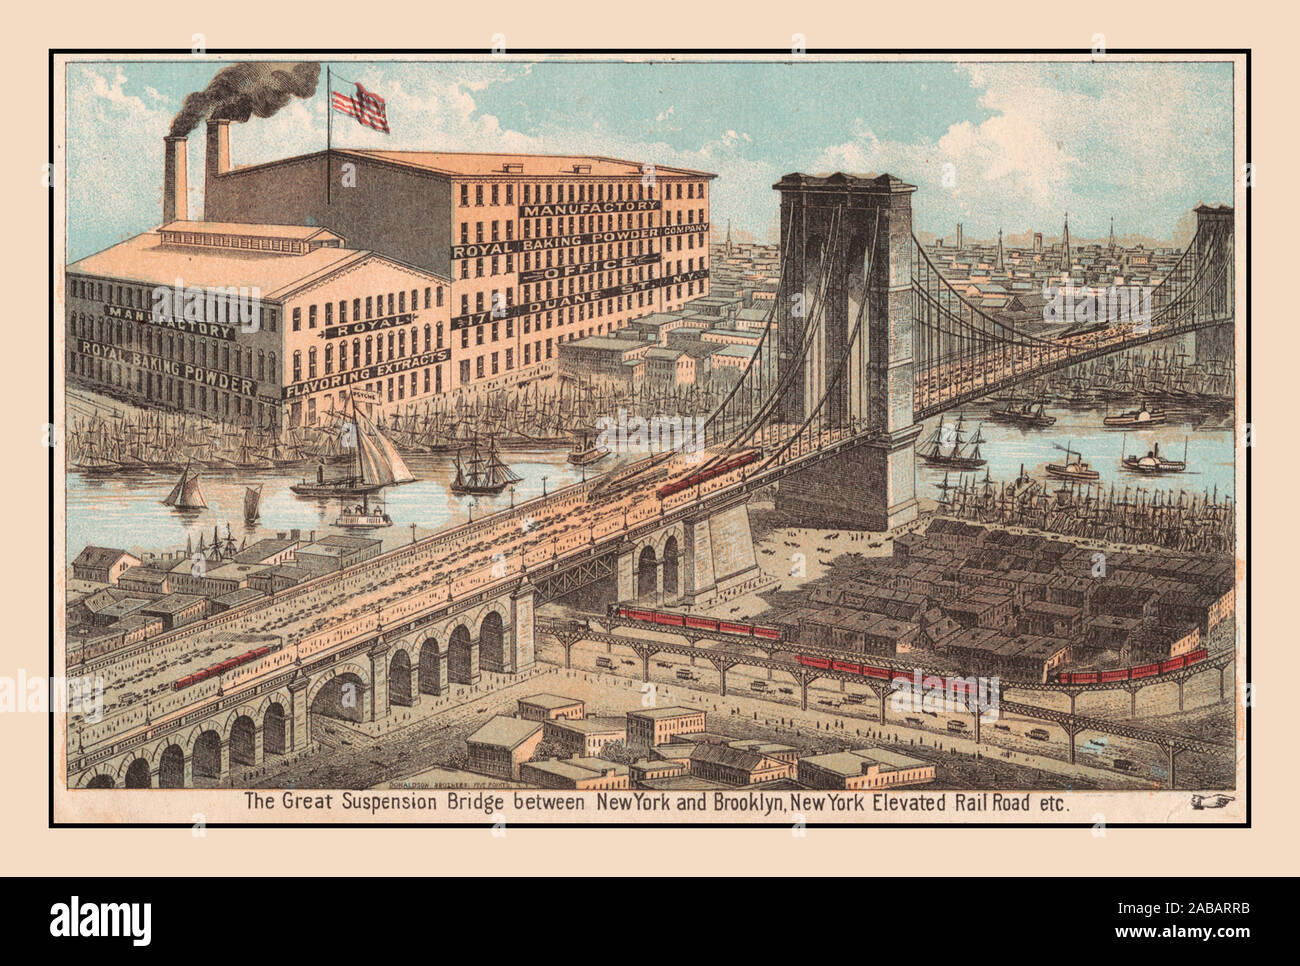 Jahrgang 1800 BROOKLYN BRIDGE die große Hängebrücke zwischen New York und Brooklyn, später unter dem Namen der Brooklyn Bridge. 1880 Vollständige Beschriftung unten liest: Der große Hängebrücke zwischen New York und Brooklyn, New York erhöhte Rail Road etc. Großes Gebäude ist Werbung bin anufactory Royal Backpulver Company'. Stockfoto